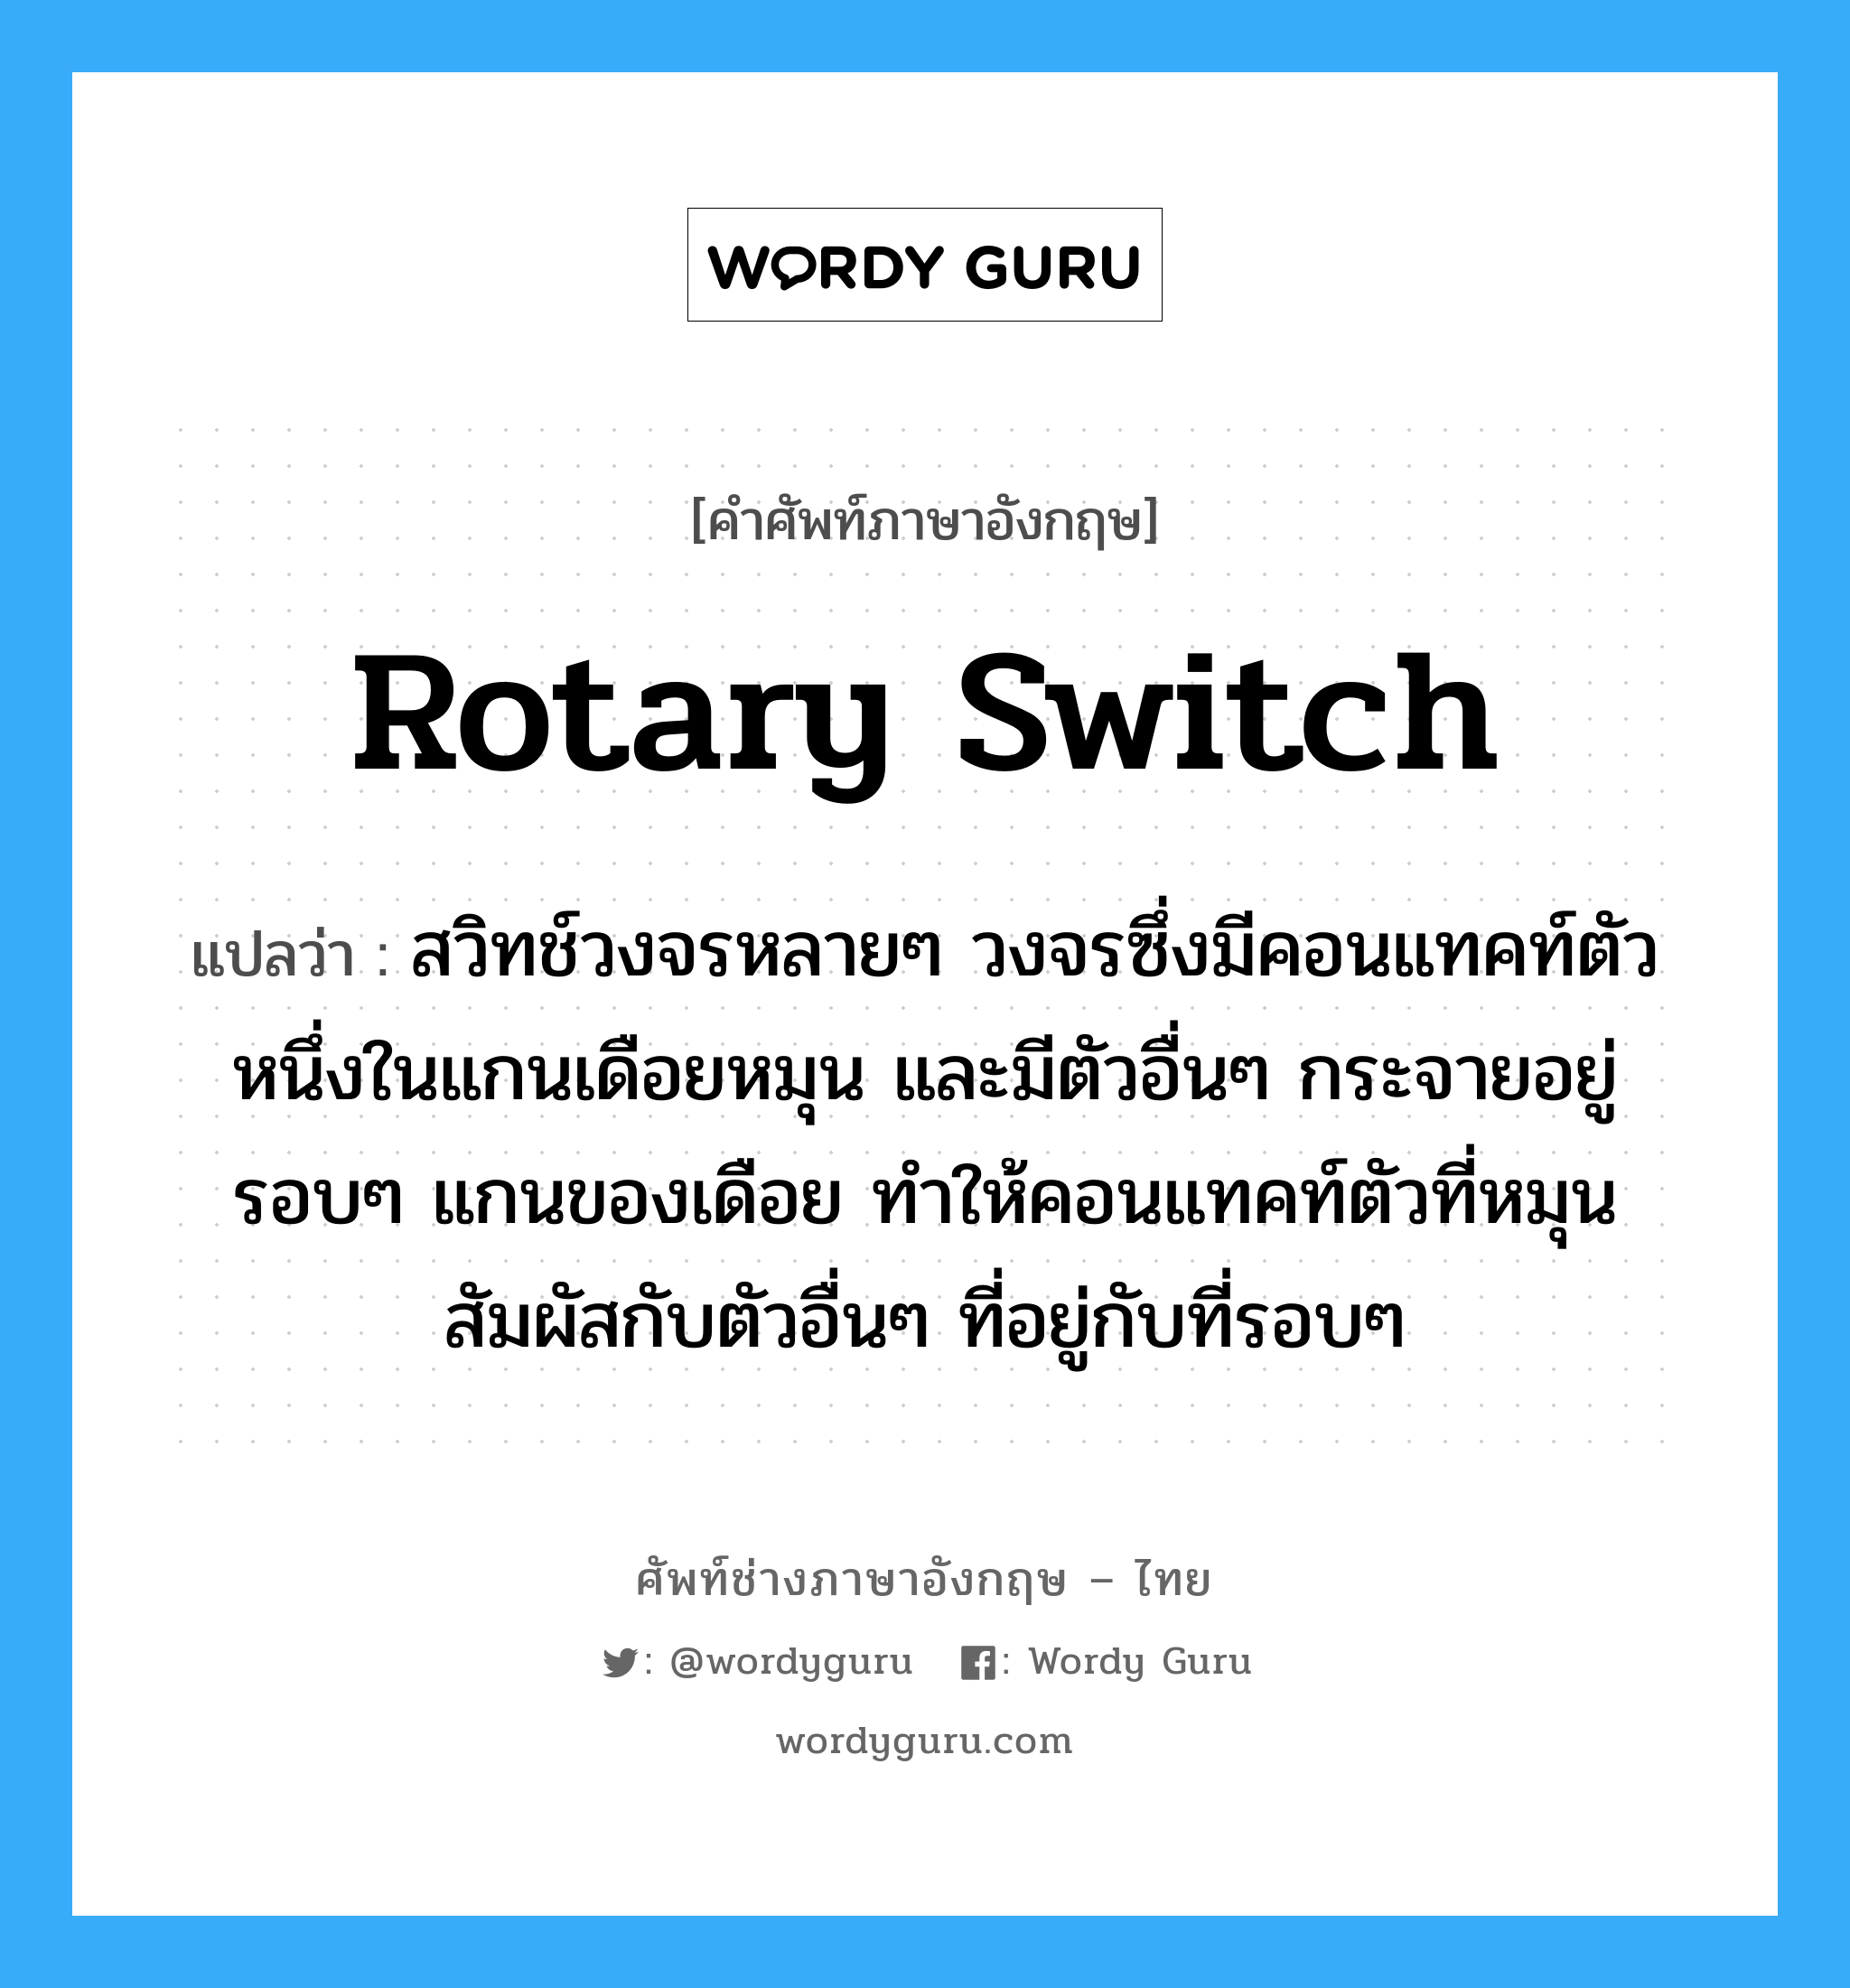 rotary switch แปลว่า?, คำศัพท์ช่างภาษาอังกฤษ - ไทย rotary switch คำศัพท์ภาษาอังกฤษ rotary switch แปลว่า สวิทช์วงจรหลายๆ วงจรซึ่งมีคอนแทคท์ตัวหนึ่งในแกนเดือยหมุน และมีตัวอื่นๆ กระจายอยู่รอบๆ แกนของเดือย ทำให้คอนแทคท์ตัวที่หมุนสัมผัสกับตัวอื่นๆ ที่อยู่กับที่รอบๆ